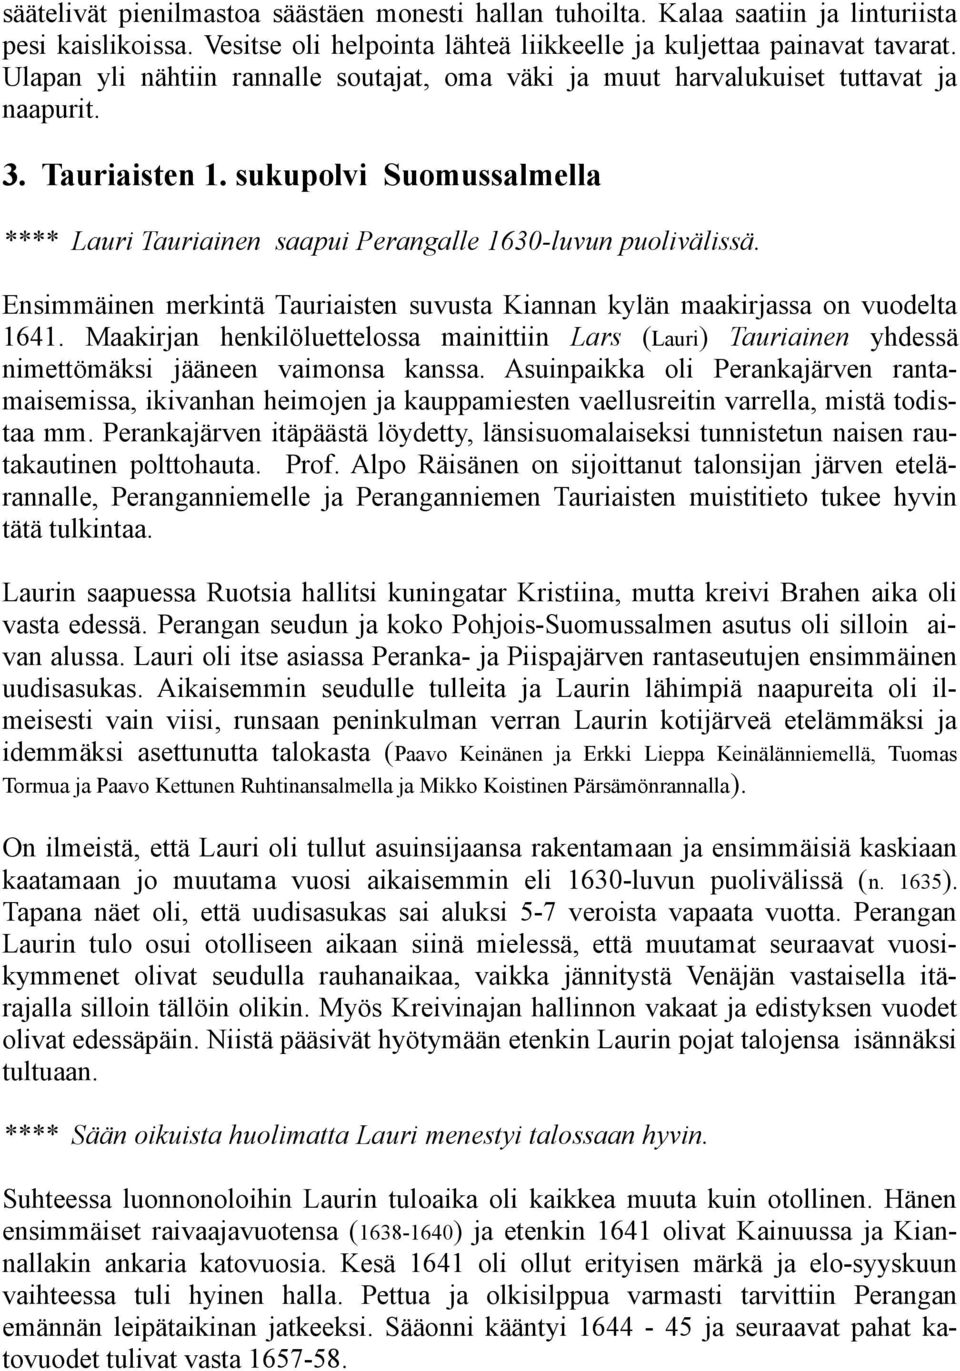 Ensimmäinen merkintä Tauriaisten suvusta Kiannan kylän maakirjassa on vuodelta 1641. Maakirjan henkilöluettelossa mainittiin Lars (Lauri) Tauriainen yhdessä nimettömäksi jääneen vaimonsa kanssa.